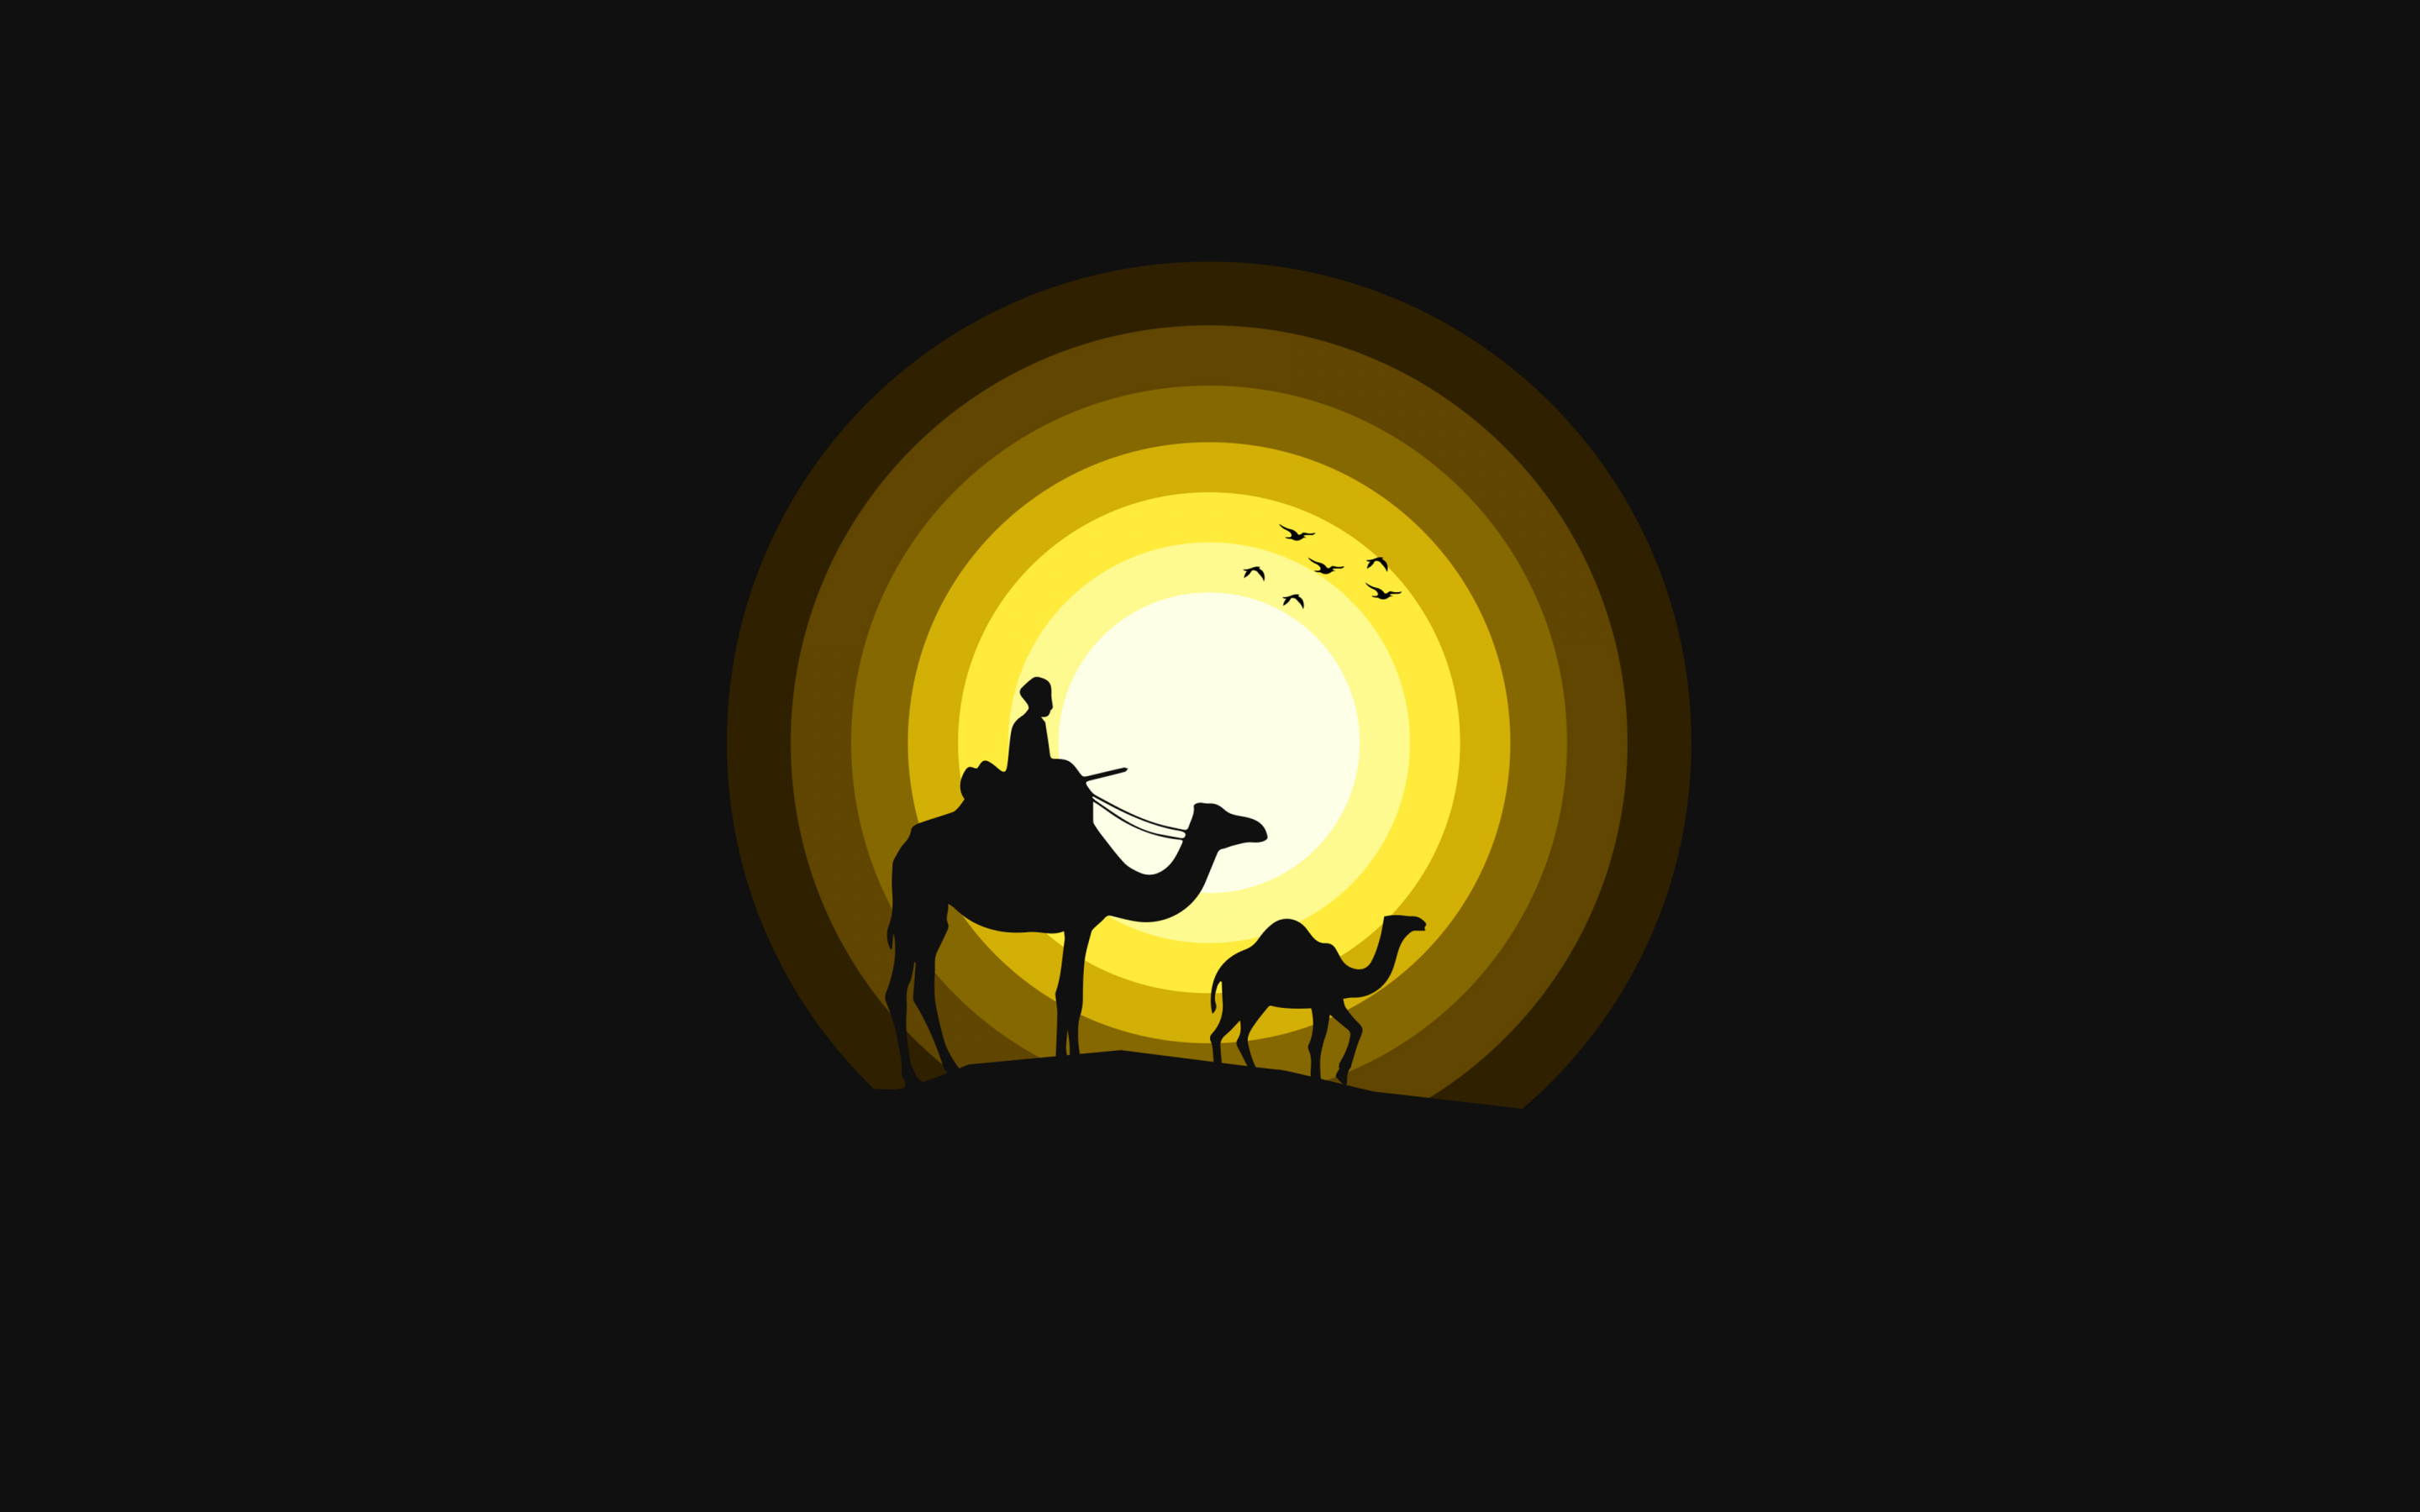 Hình nền độc quyền với hình ảnh lạ mắt về những chú lạc đà: Camels Wallpaper 4K, Sun, Silhouette, Yellow, Black/Dark, #971: Cảm giác bình yên, sự ấm áp và hơi thở của sa mạc sẽ được khơi gợi mỗi khi sử dụng hình nền này.